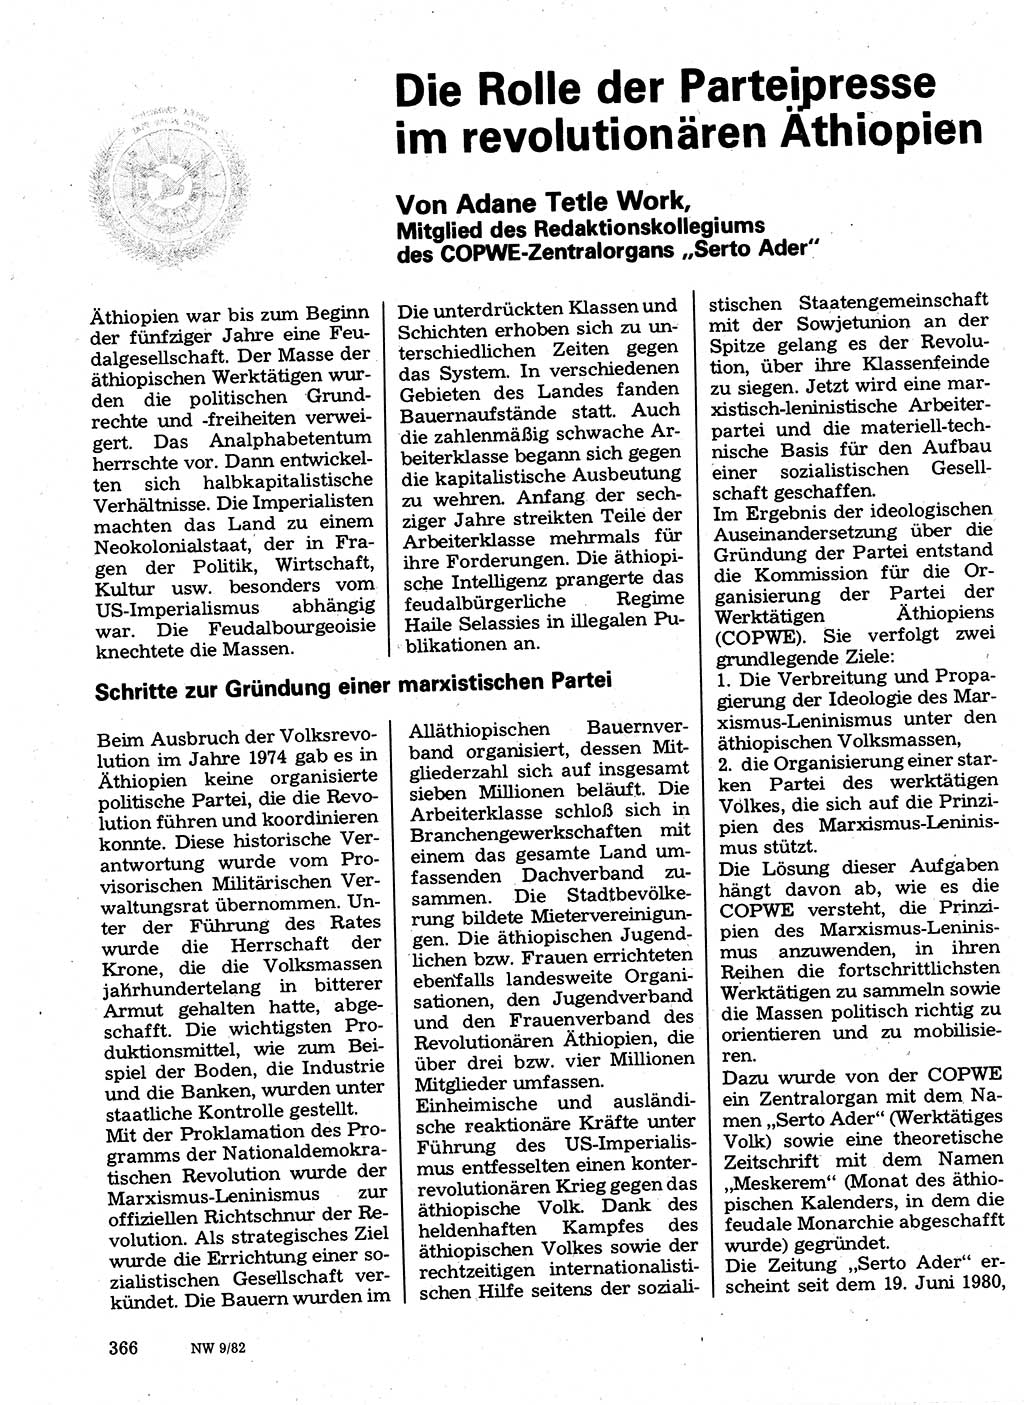 Neuer Weg (NW), Organ des Zentralkomitees (ZK) der SED (Sozialistische Einheitspartei Deutschlands) für Fragen des Parteilebens, 37. Jahrgang [Deutsche Demokratische Republik (DDR)] 1982, Seite 366 (NW ZK SED DDR 1982, S. 366)